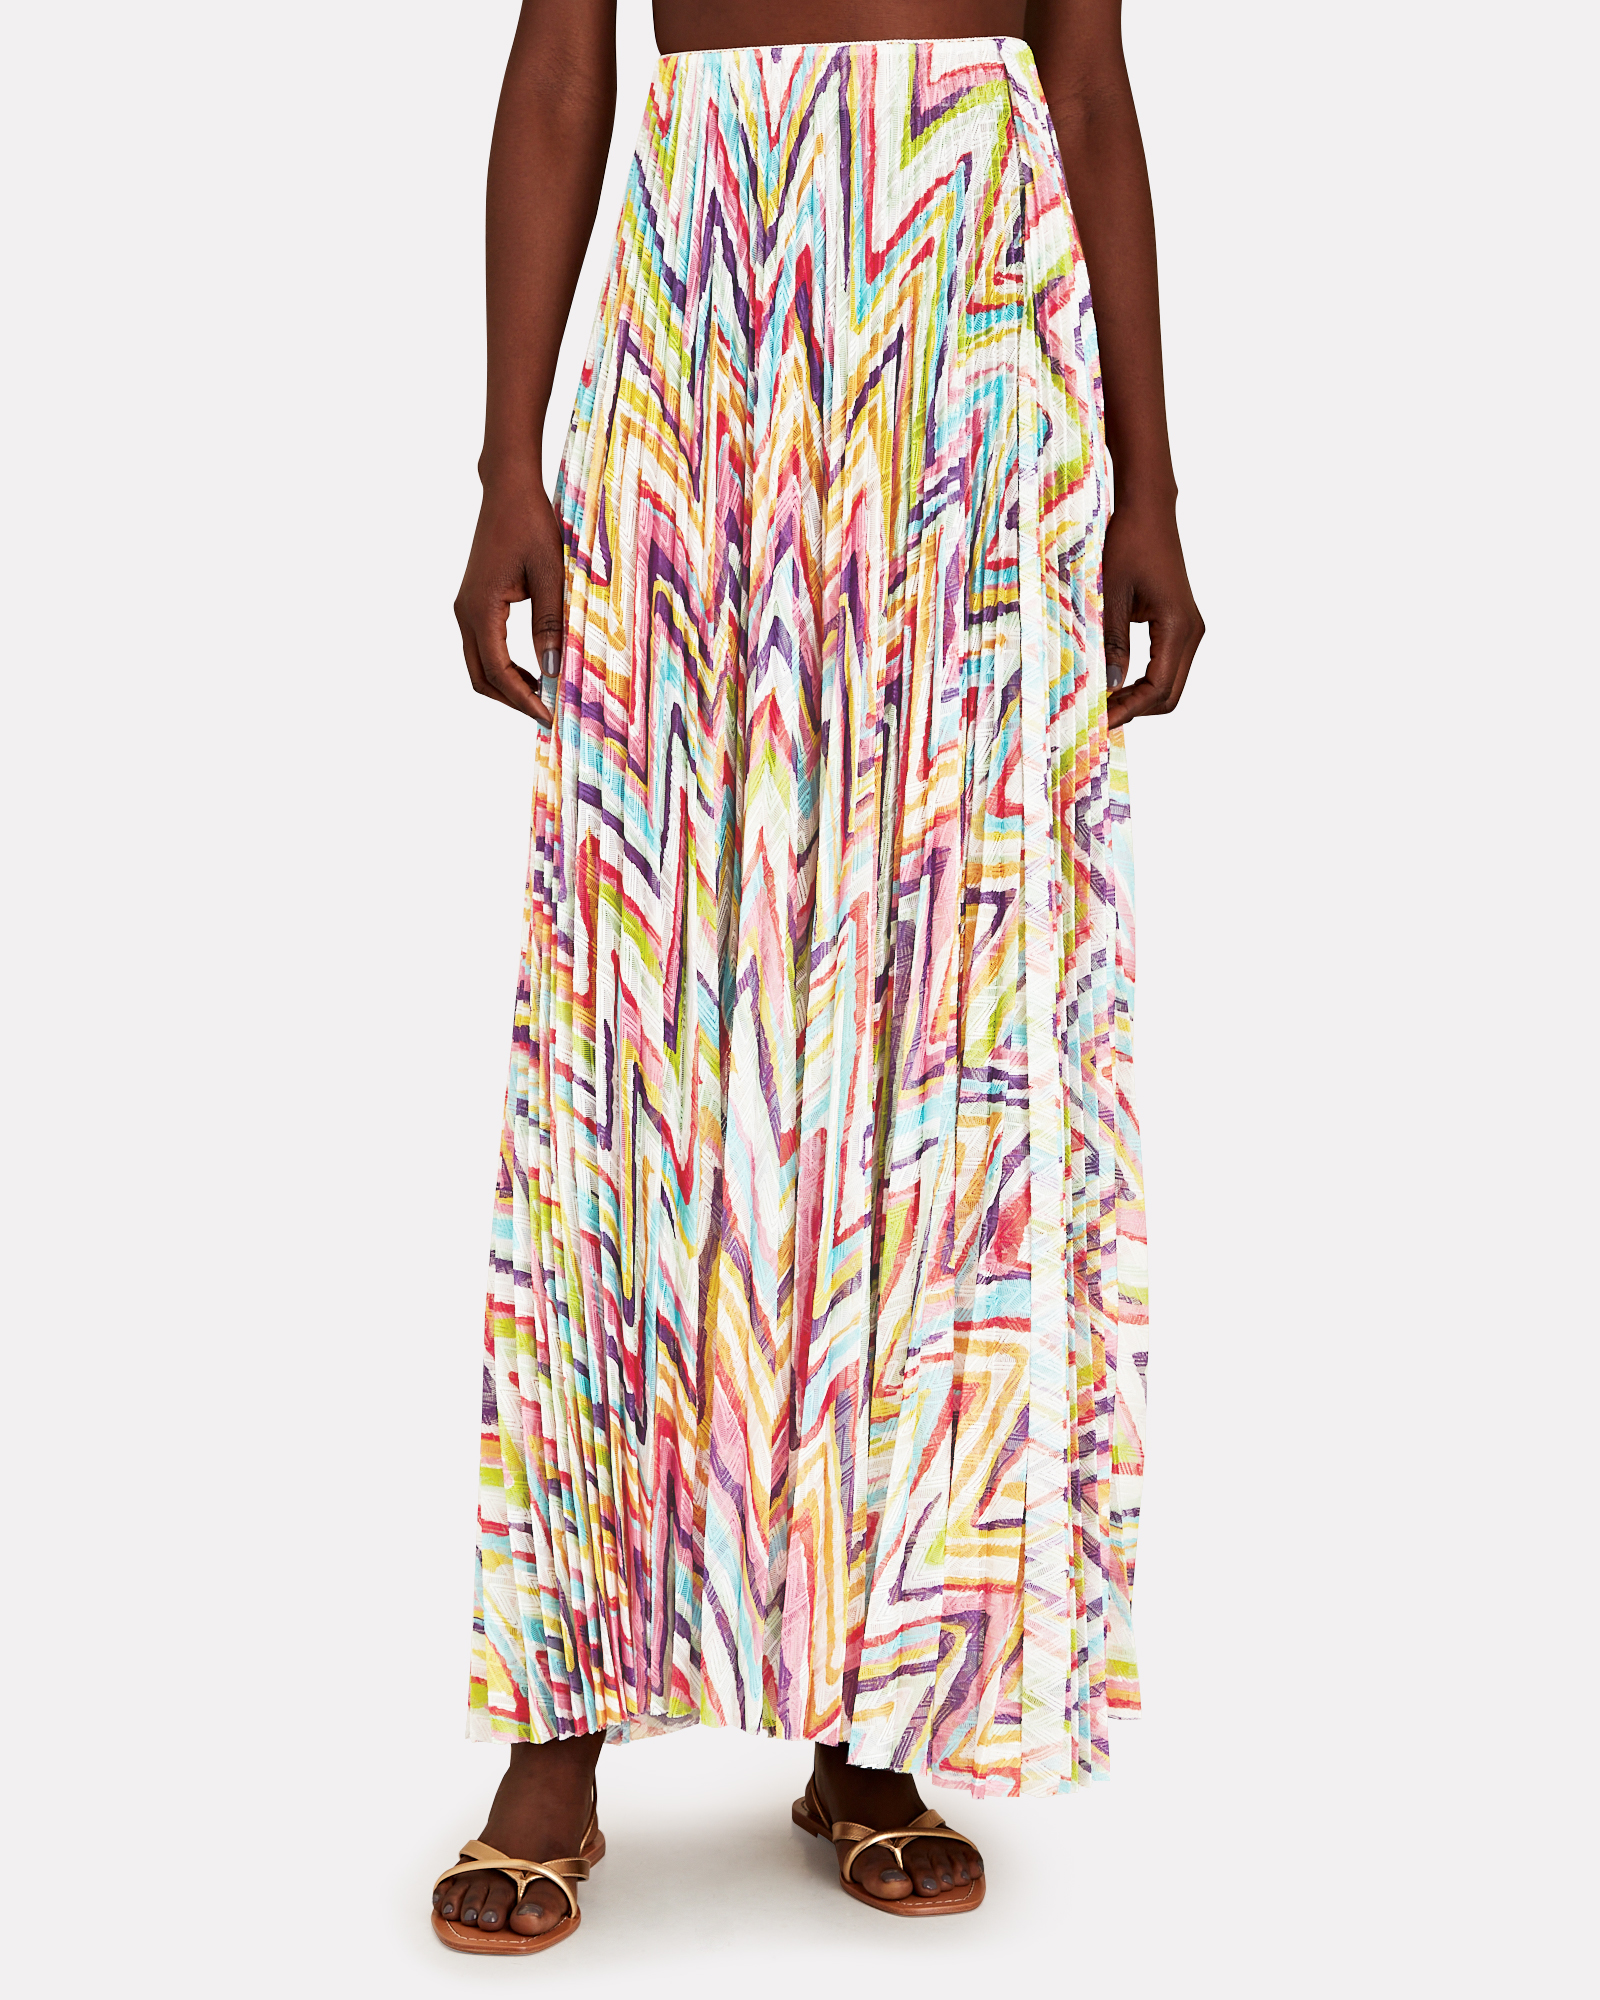 Missoni Mare Striped Knit Maxi Skirt in Multi-color | INTERMIX®